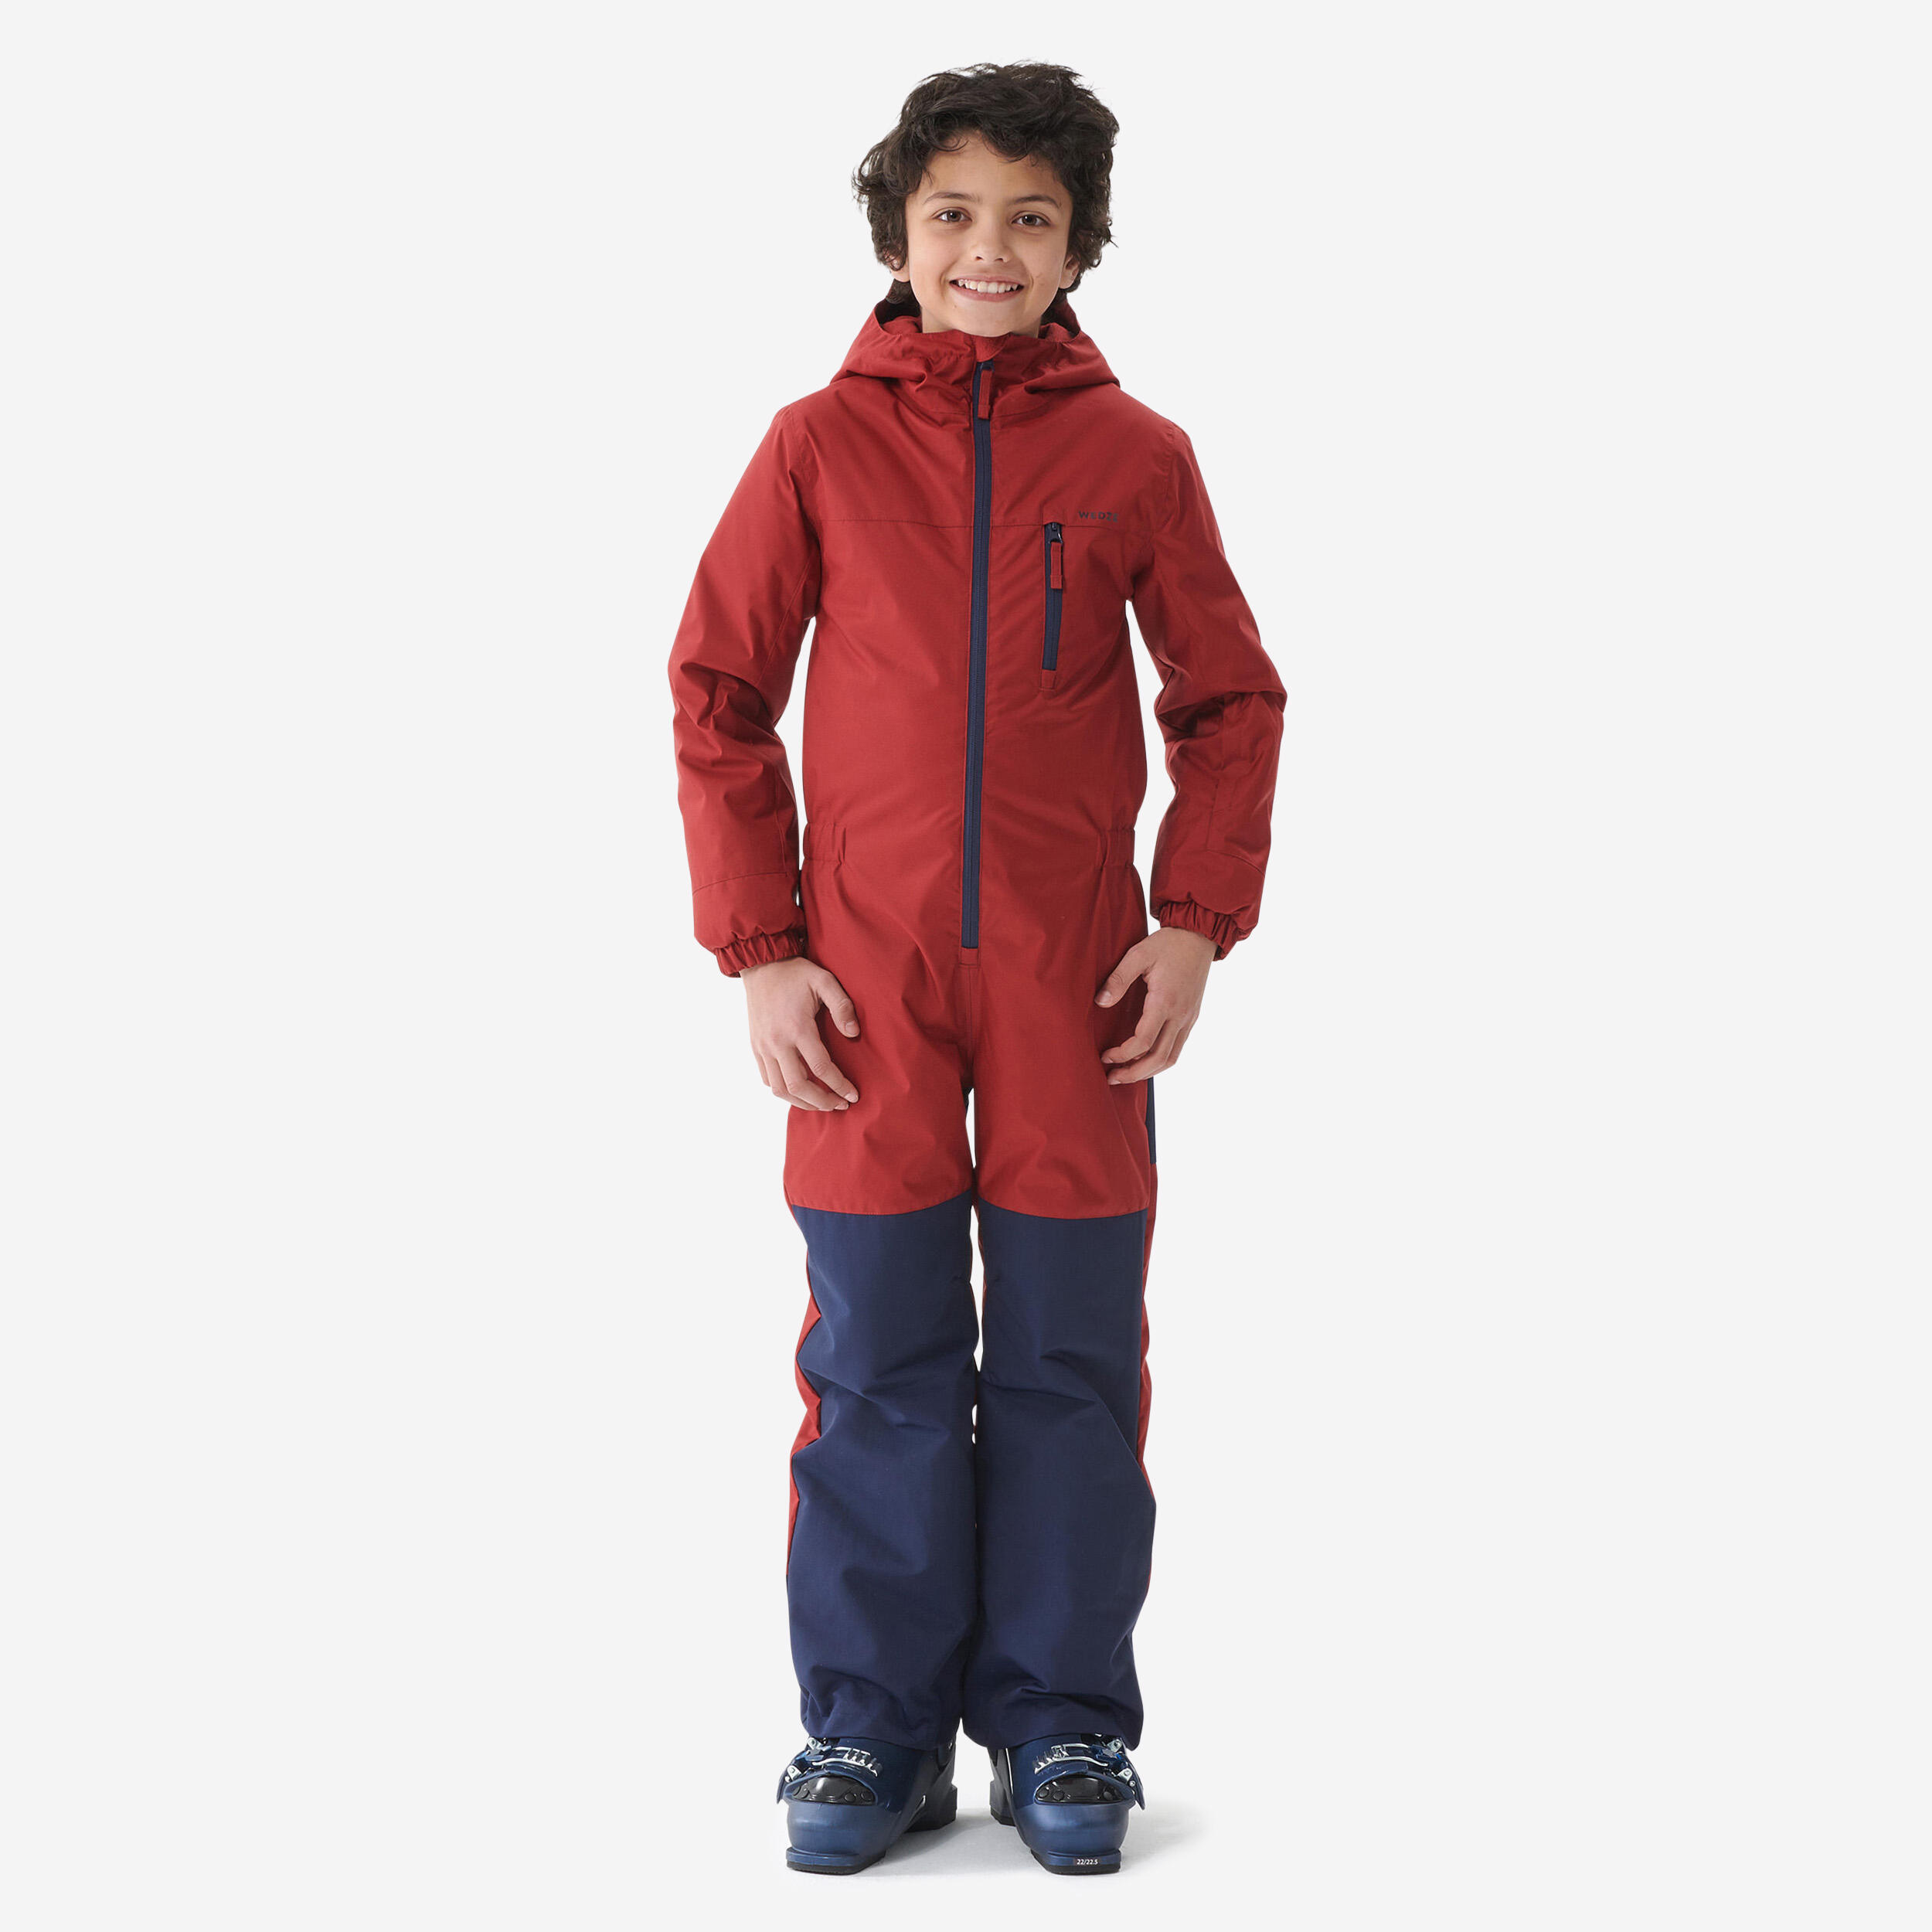 WEDZE Kids' Ski Suit - Maroon/Navy